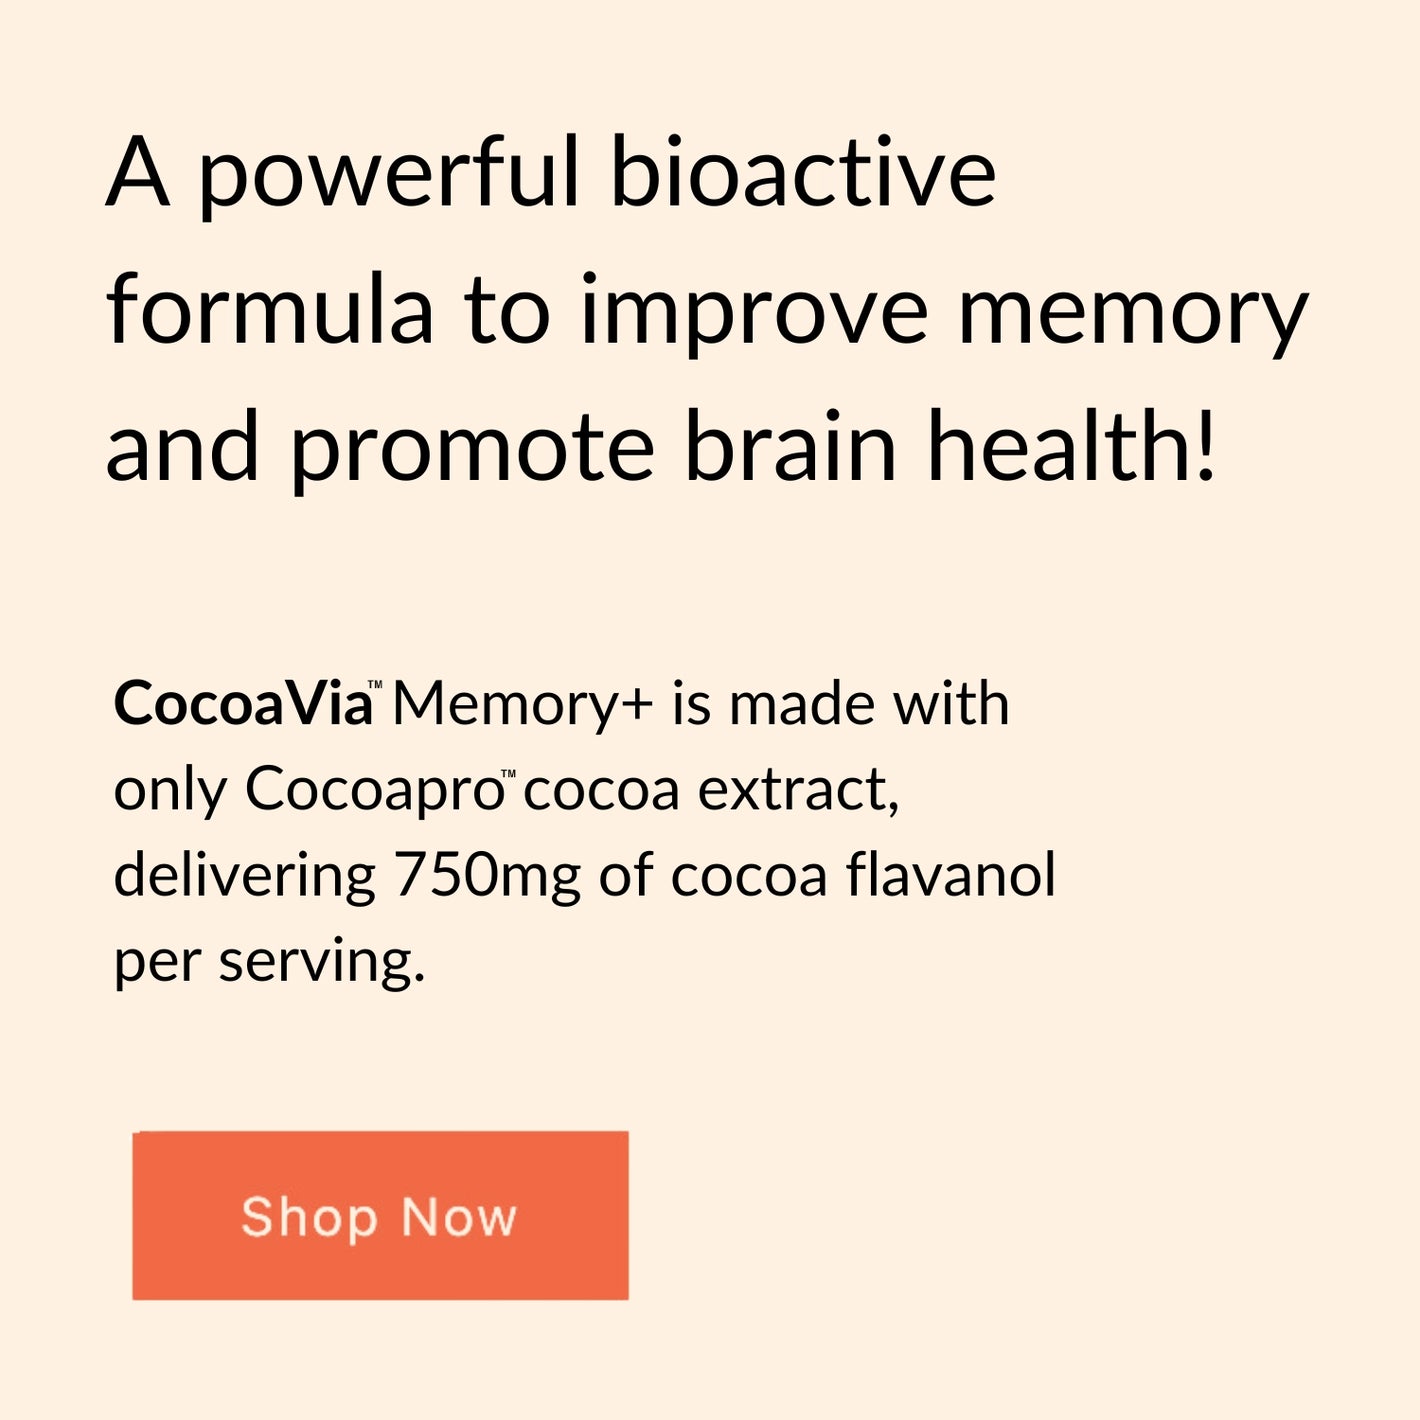 CocoaVia Brain Health